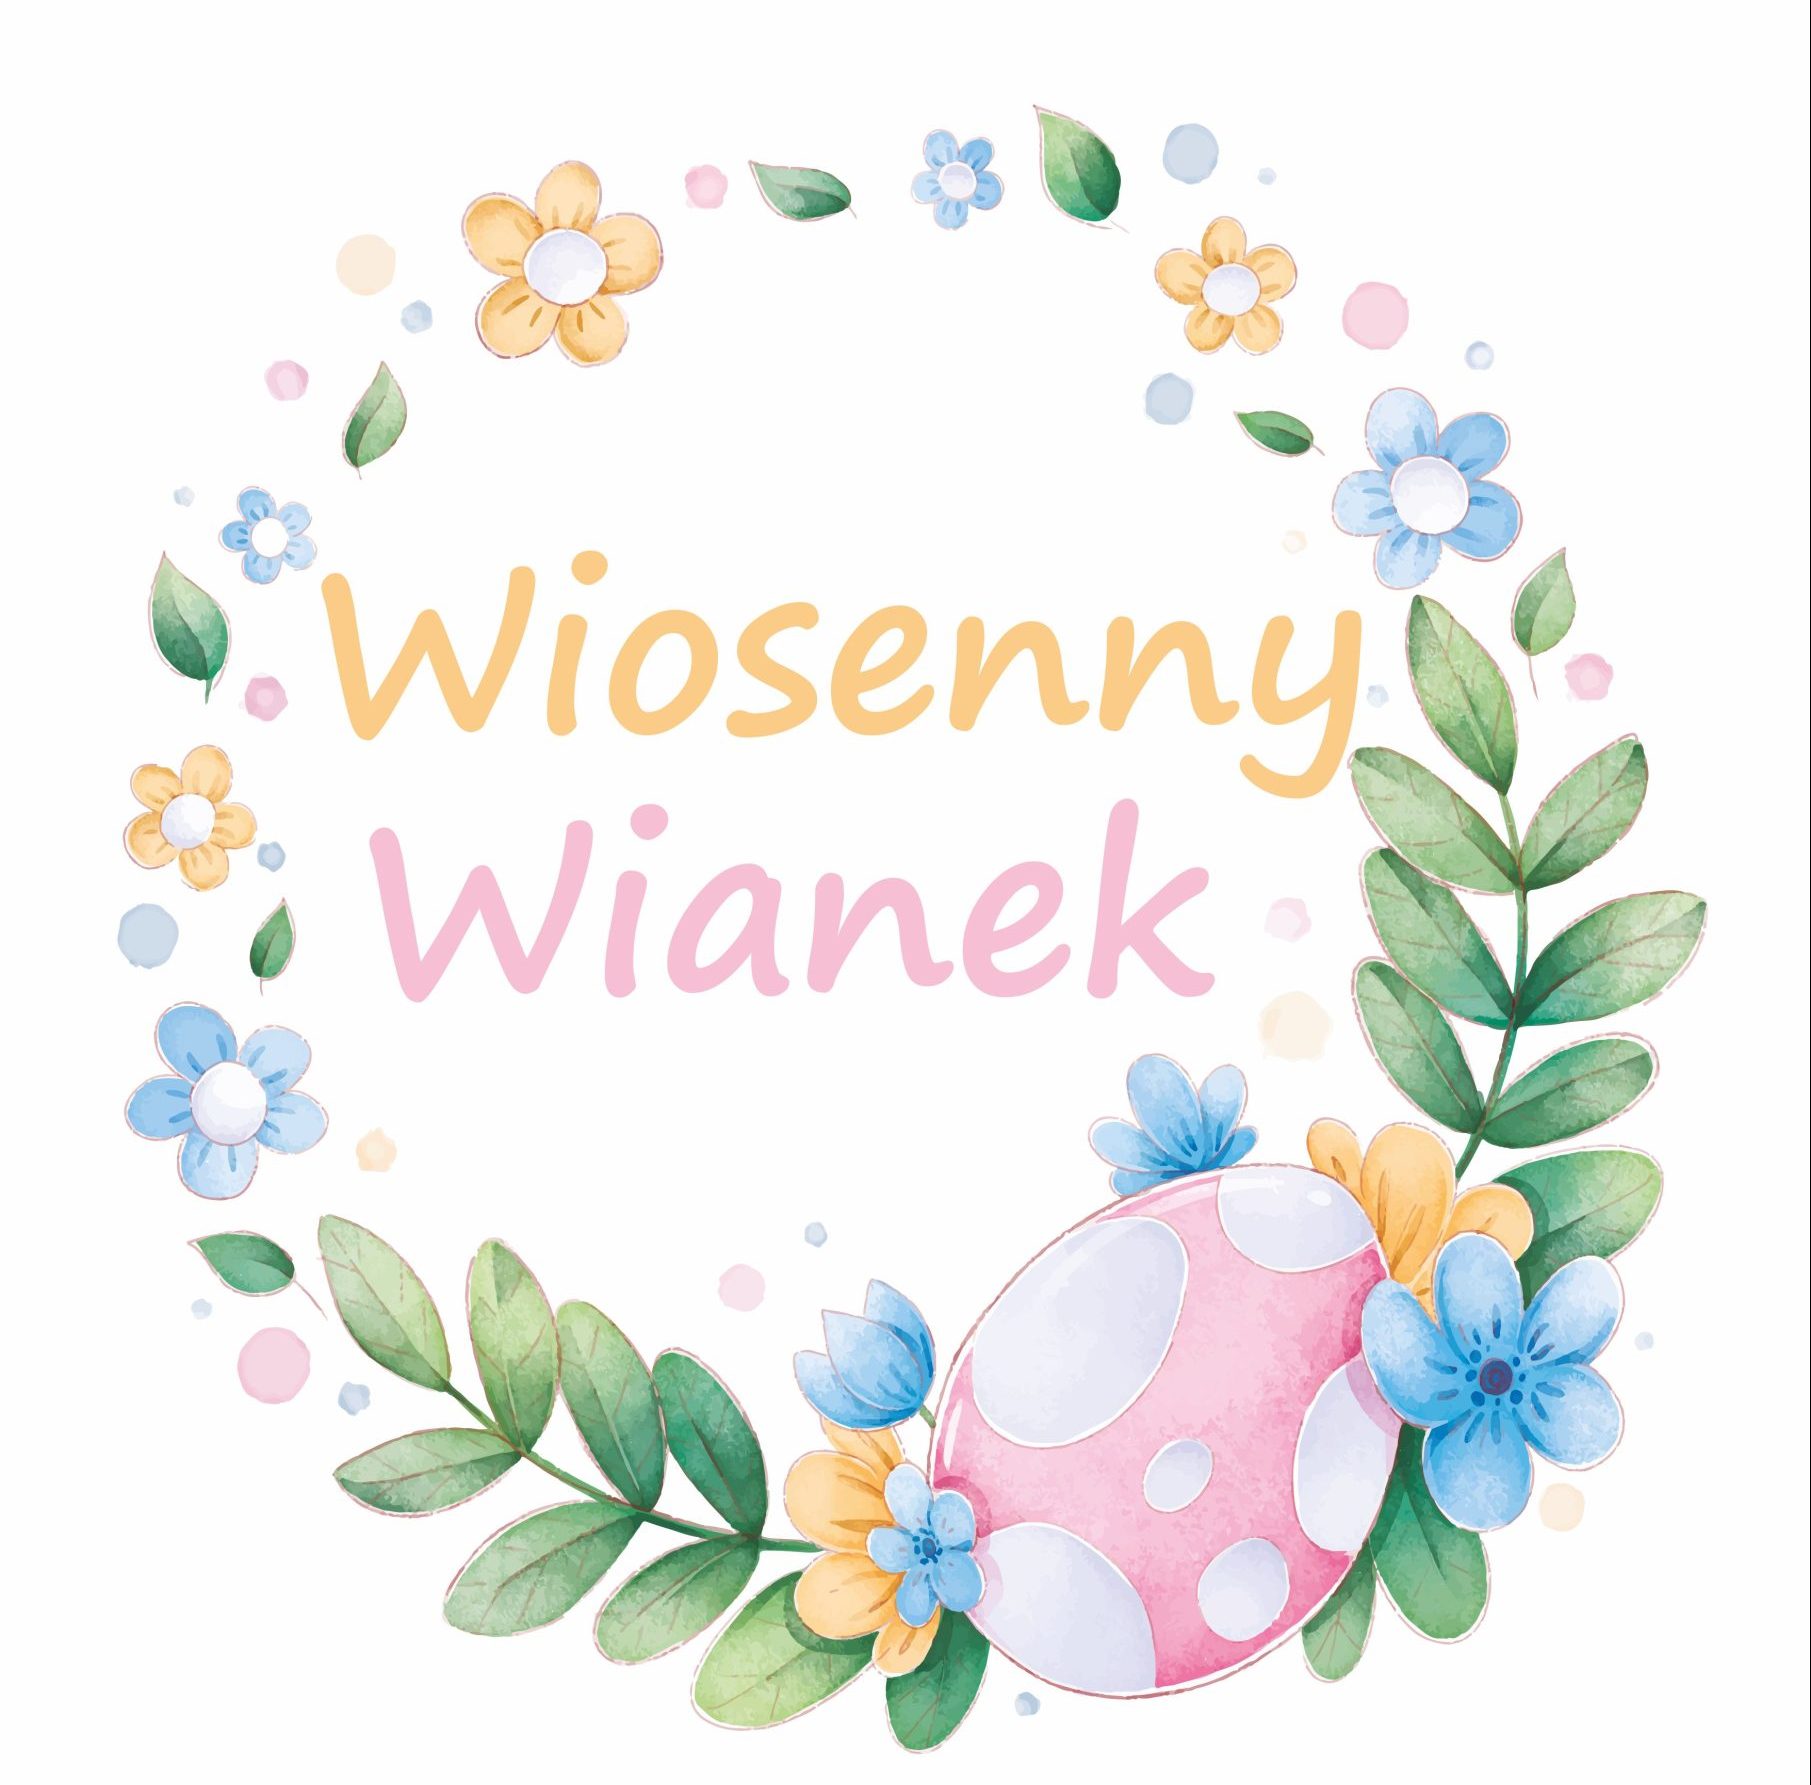 Wiosenny Wianek - warsztaty wielkanocne. Dąbrowa Górnicza